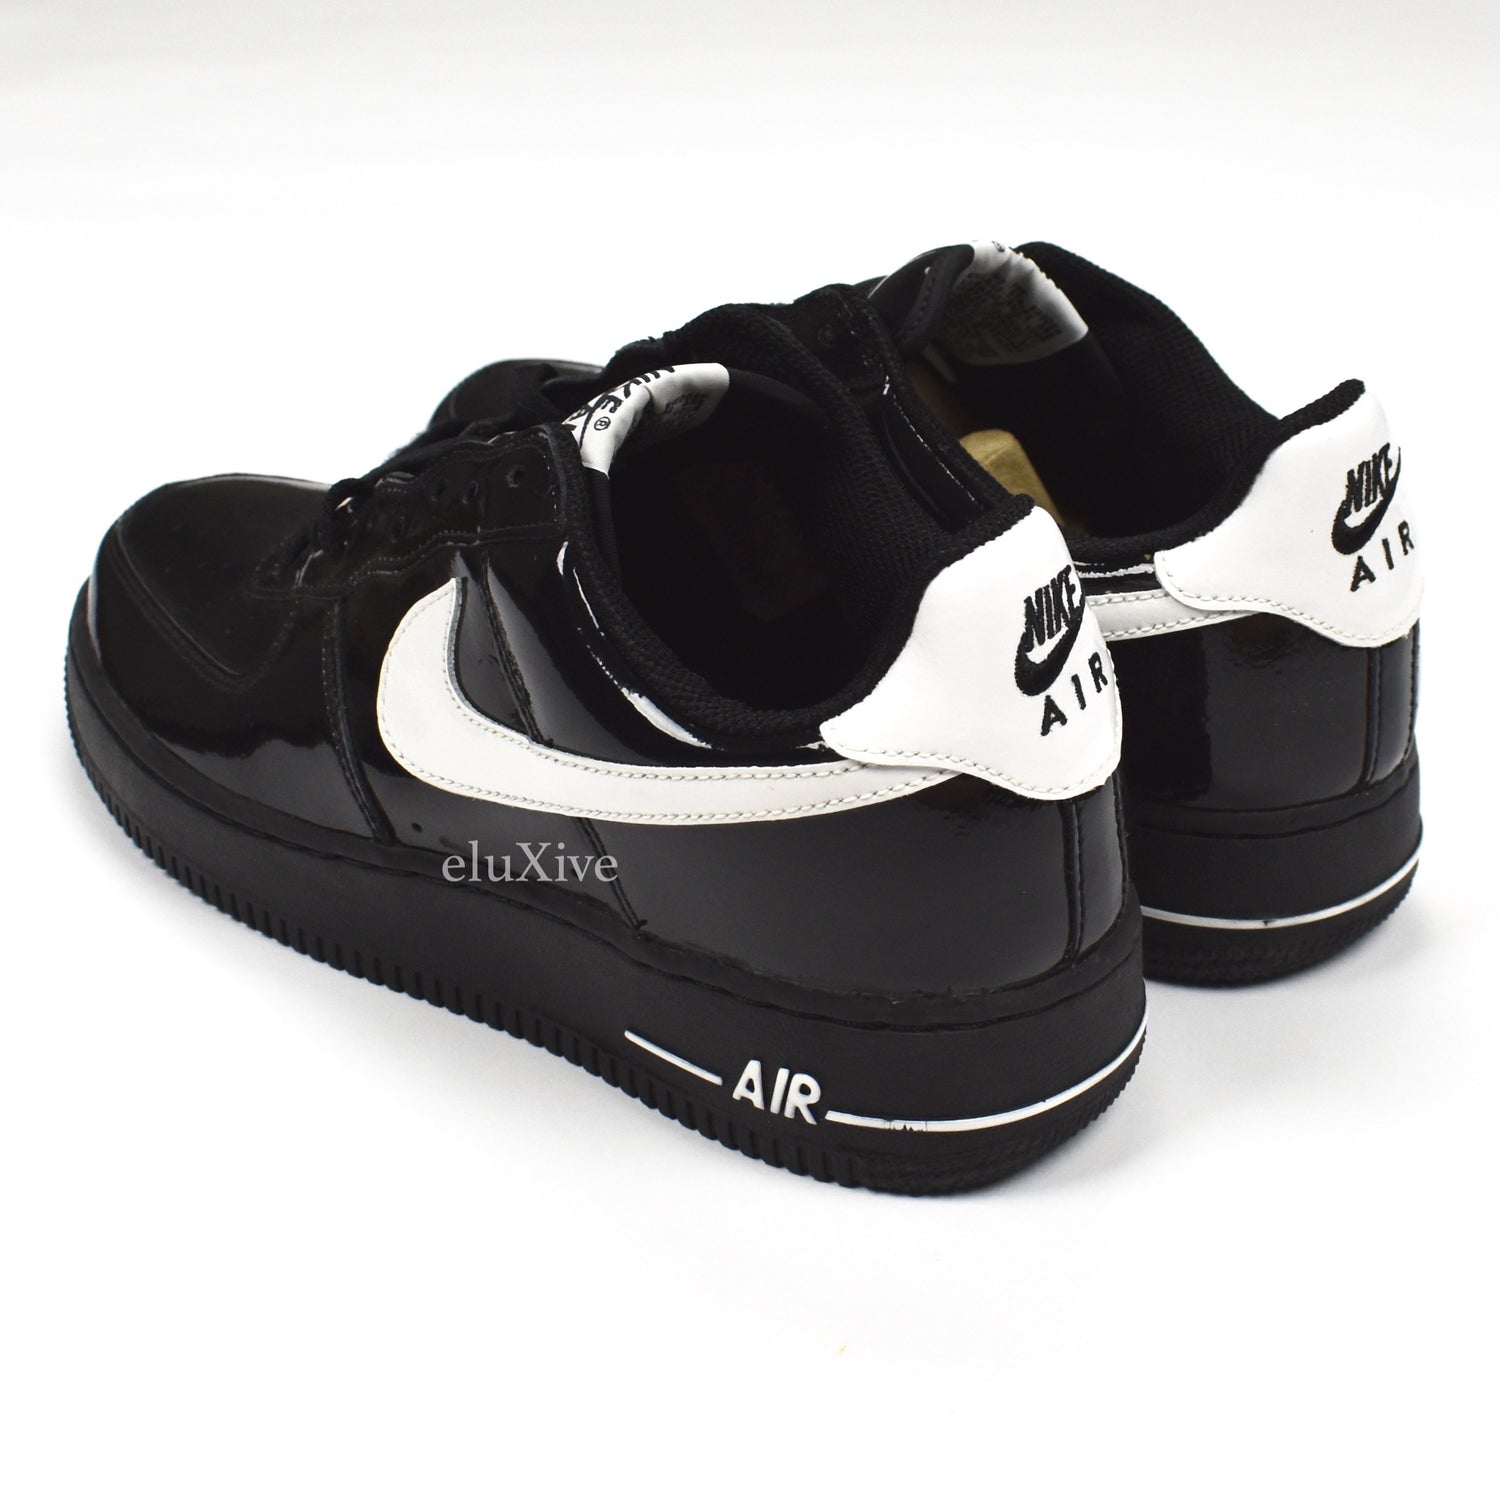 Nike Air Force 1 '07 LV8 Utility White Men's Size 10.5 Bla…